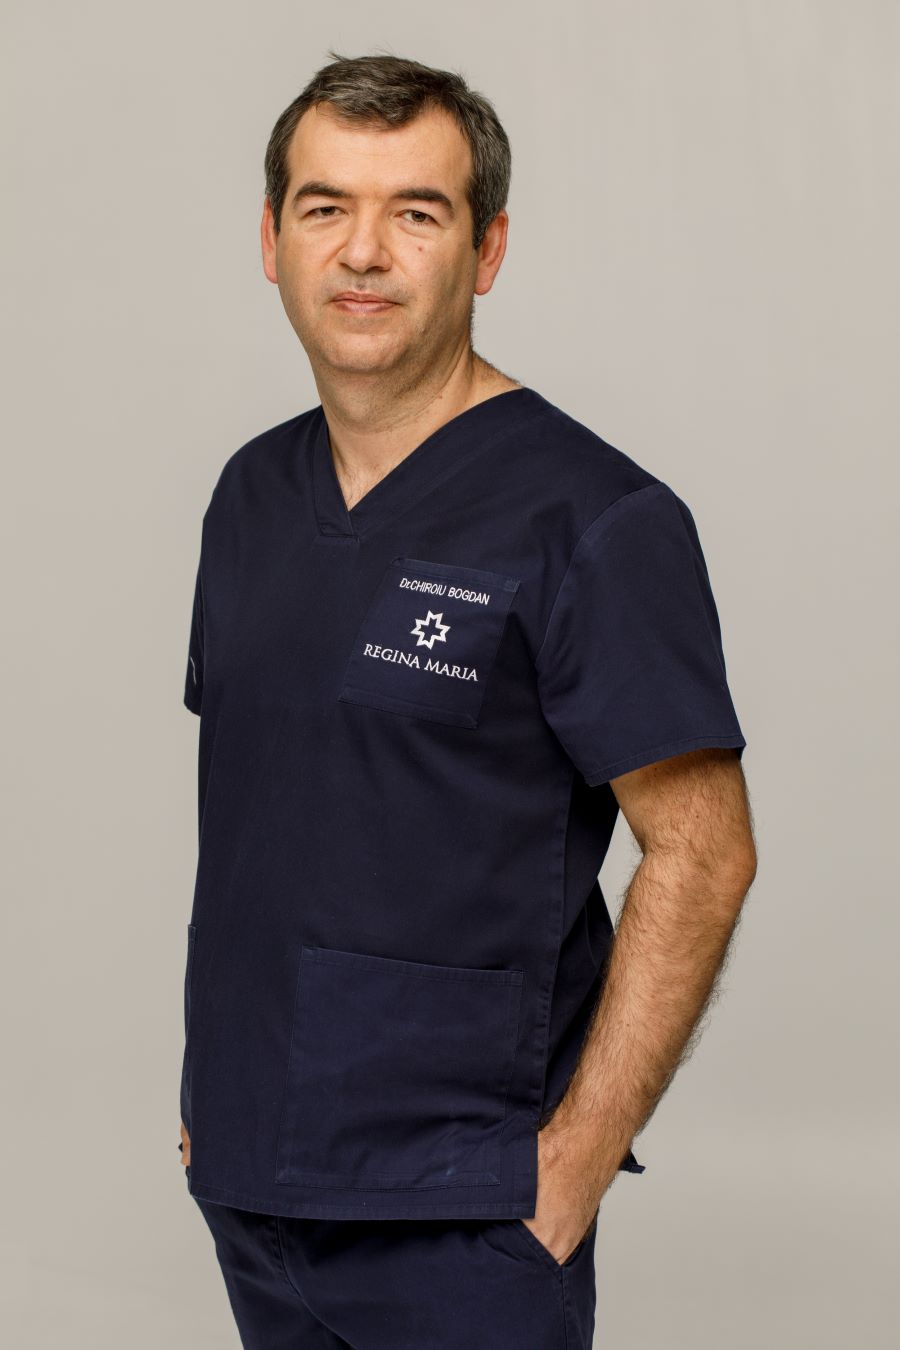 Dr.Bogdan Chiroiu, medic primar radiologie - imagistică medicală în cadrul Spitalului Regina Maria Cluj, specialist în investigația HSG.